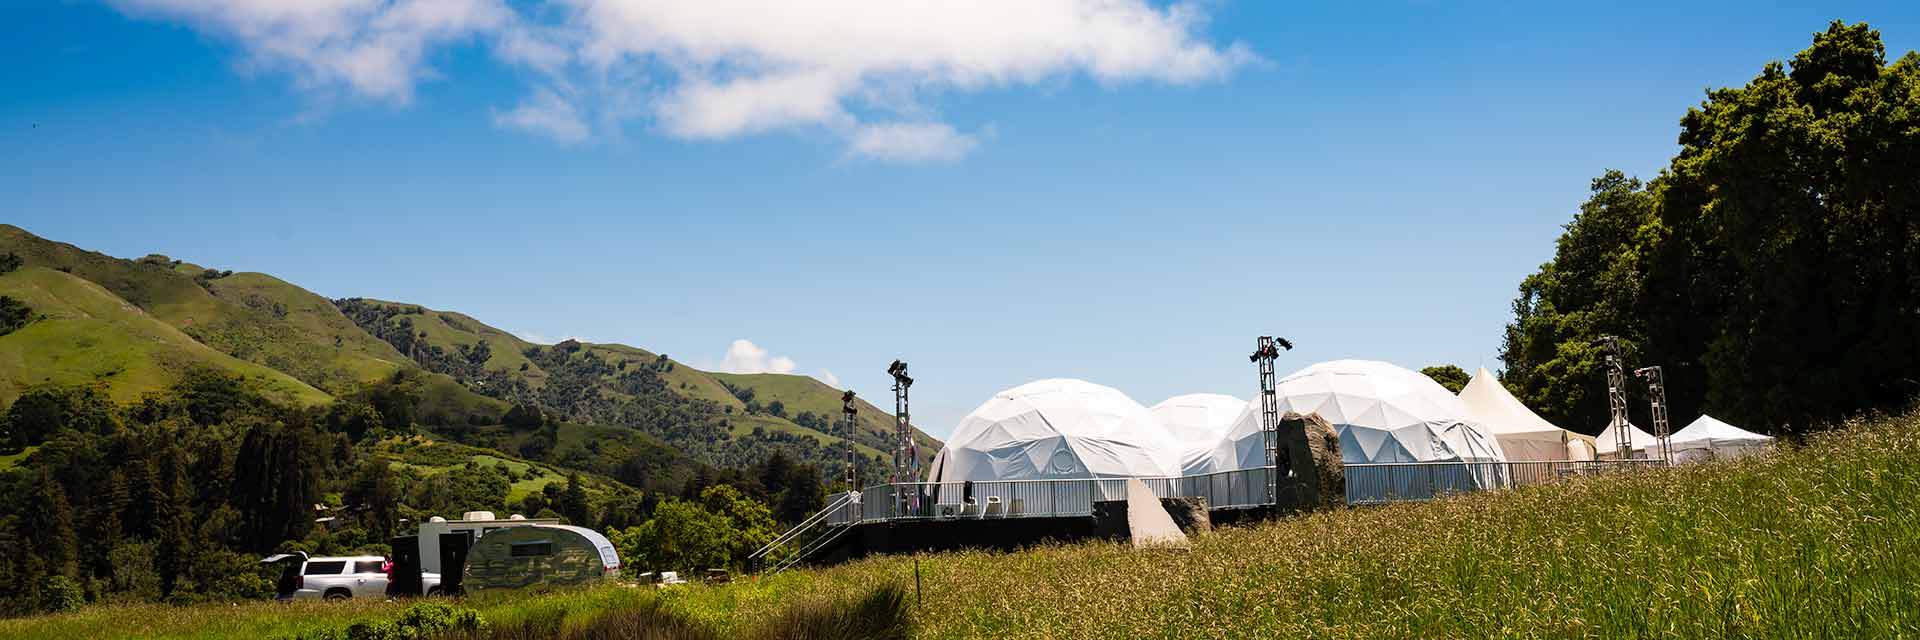 Big Sur private dome venue projection system